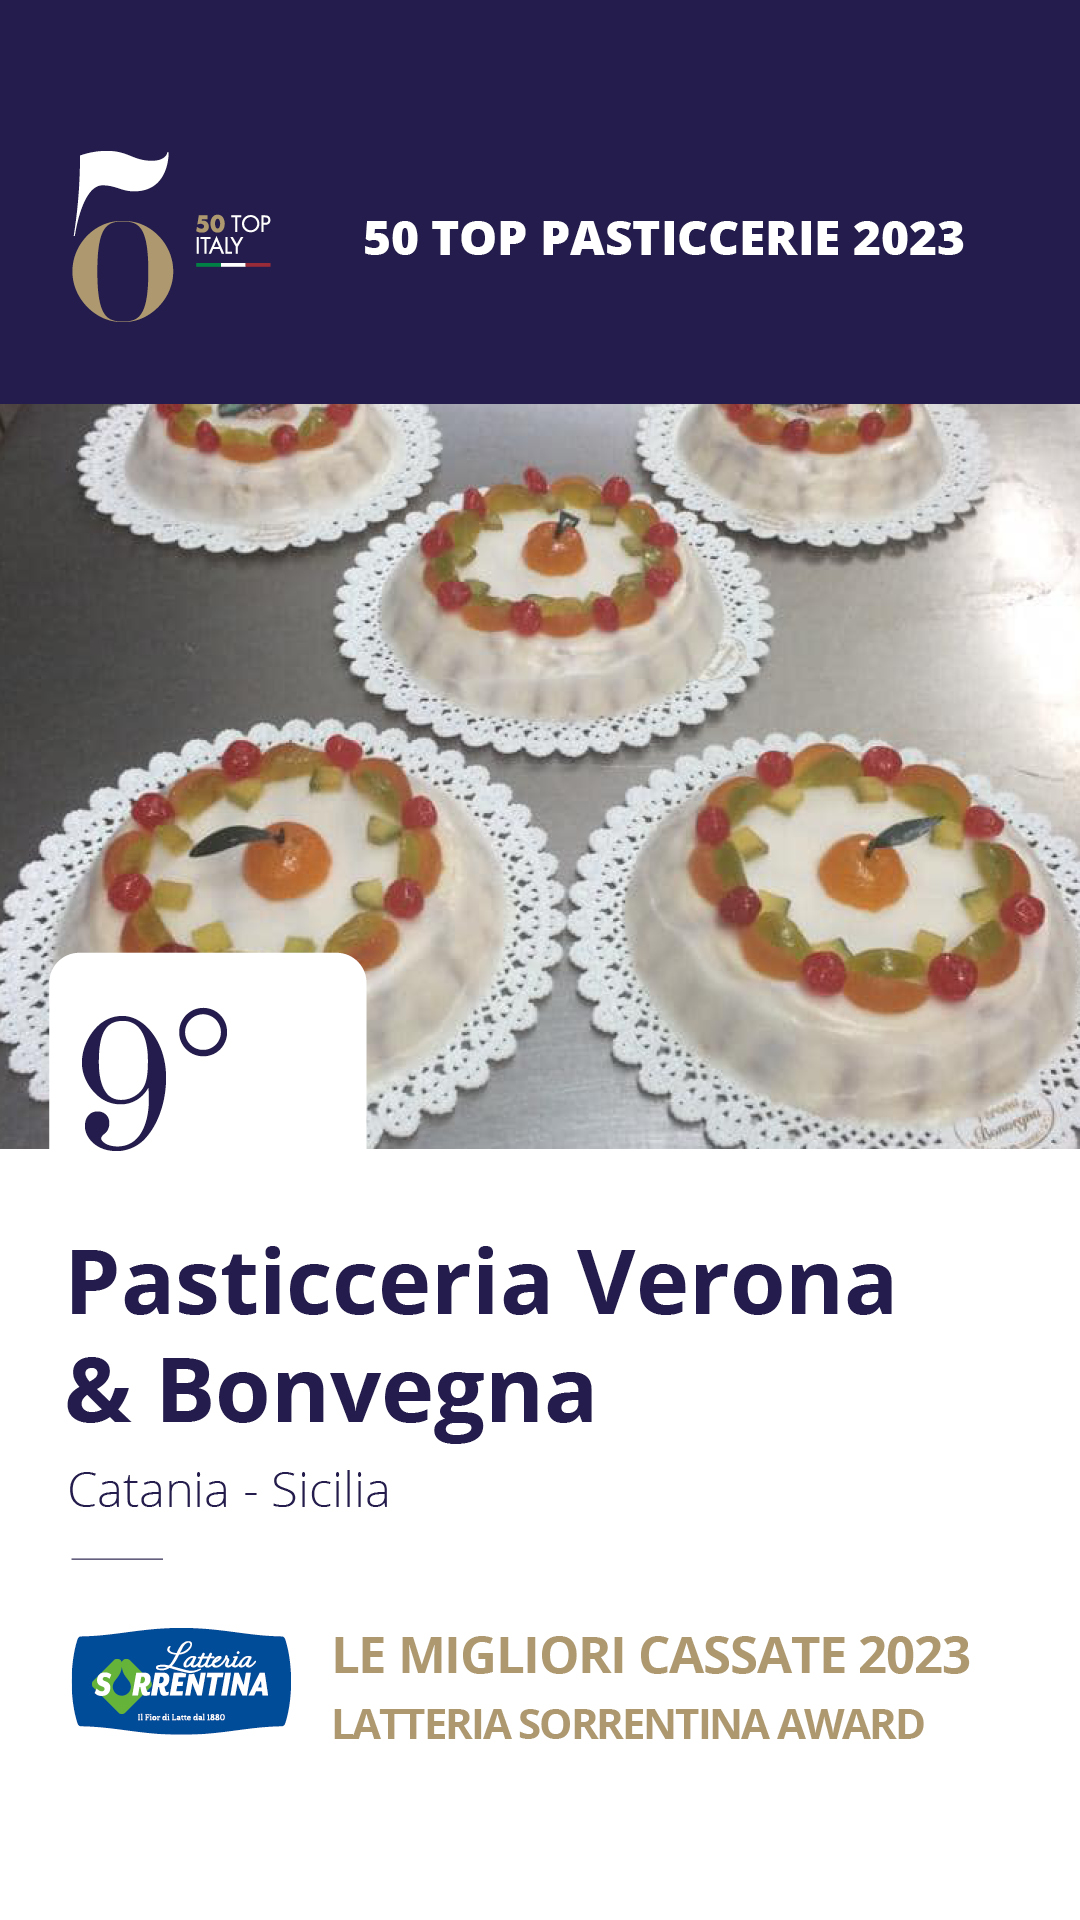 9 - Pasticceria Verona & Bonvegna - Catania, Sicilia